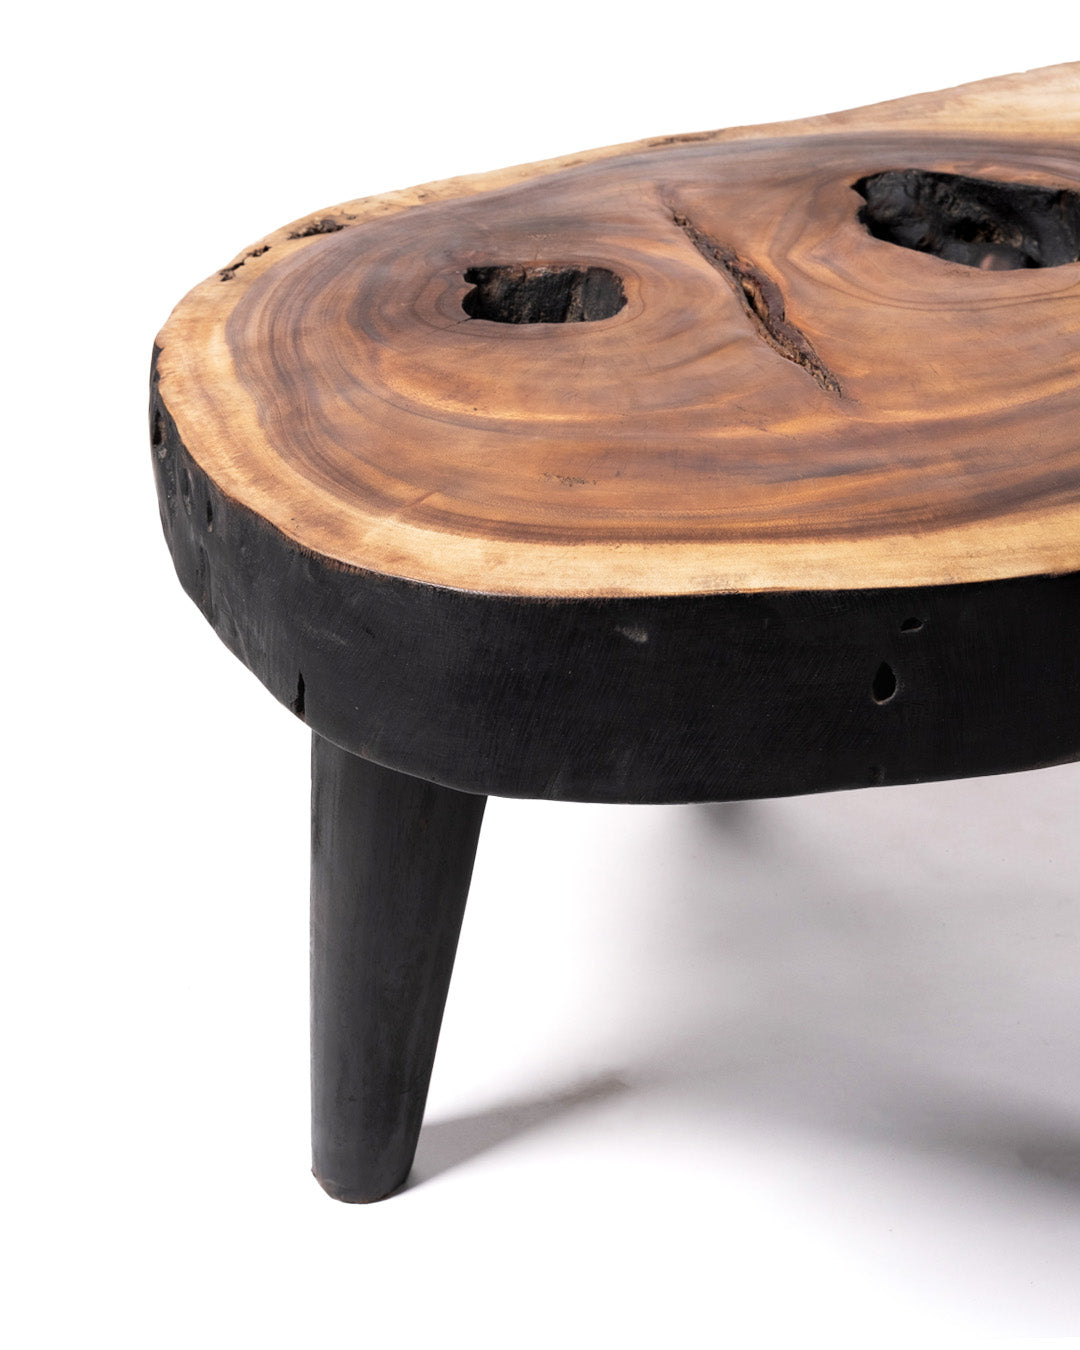 Mesa de centro de madera maciza natural de teca Bau Bau tronco rustico, hecho a mano acabado natural con detalles en negro, disponible en diferentes medidas, origen Indonesia